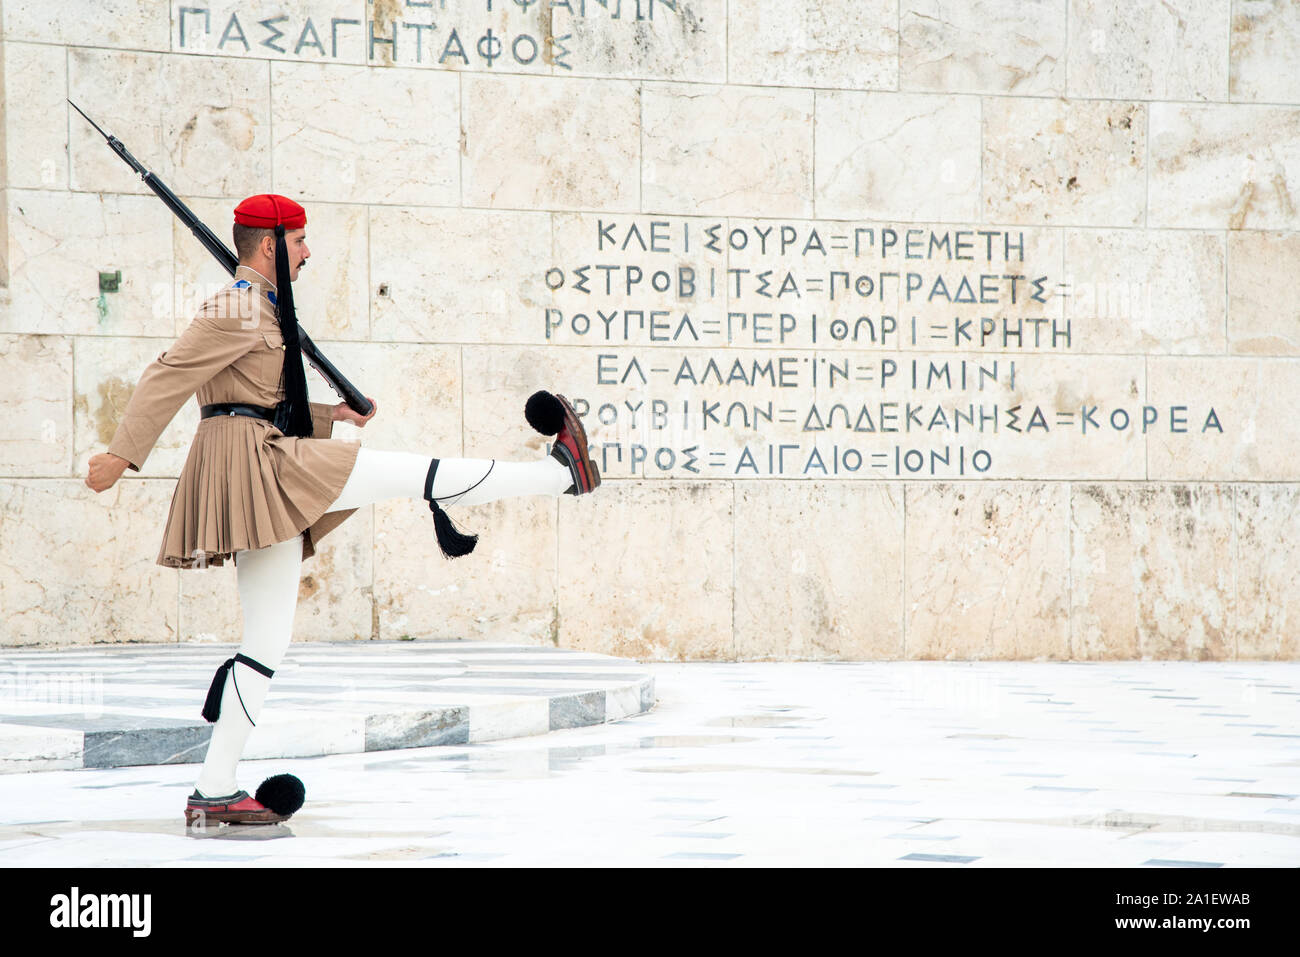 Evzone soldati greci con le medicazioni tradizionali e le pistole sfilando davanti alla tomba del milite ignoto in fro Foto Stock